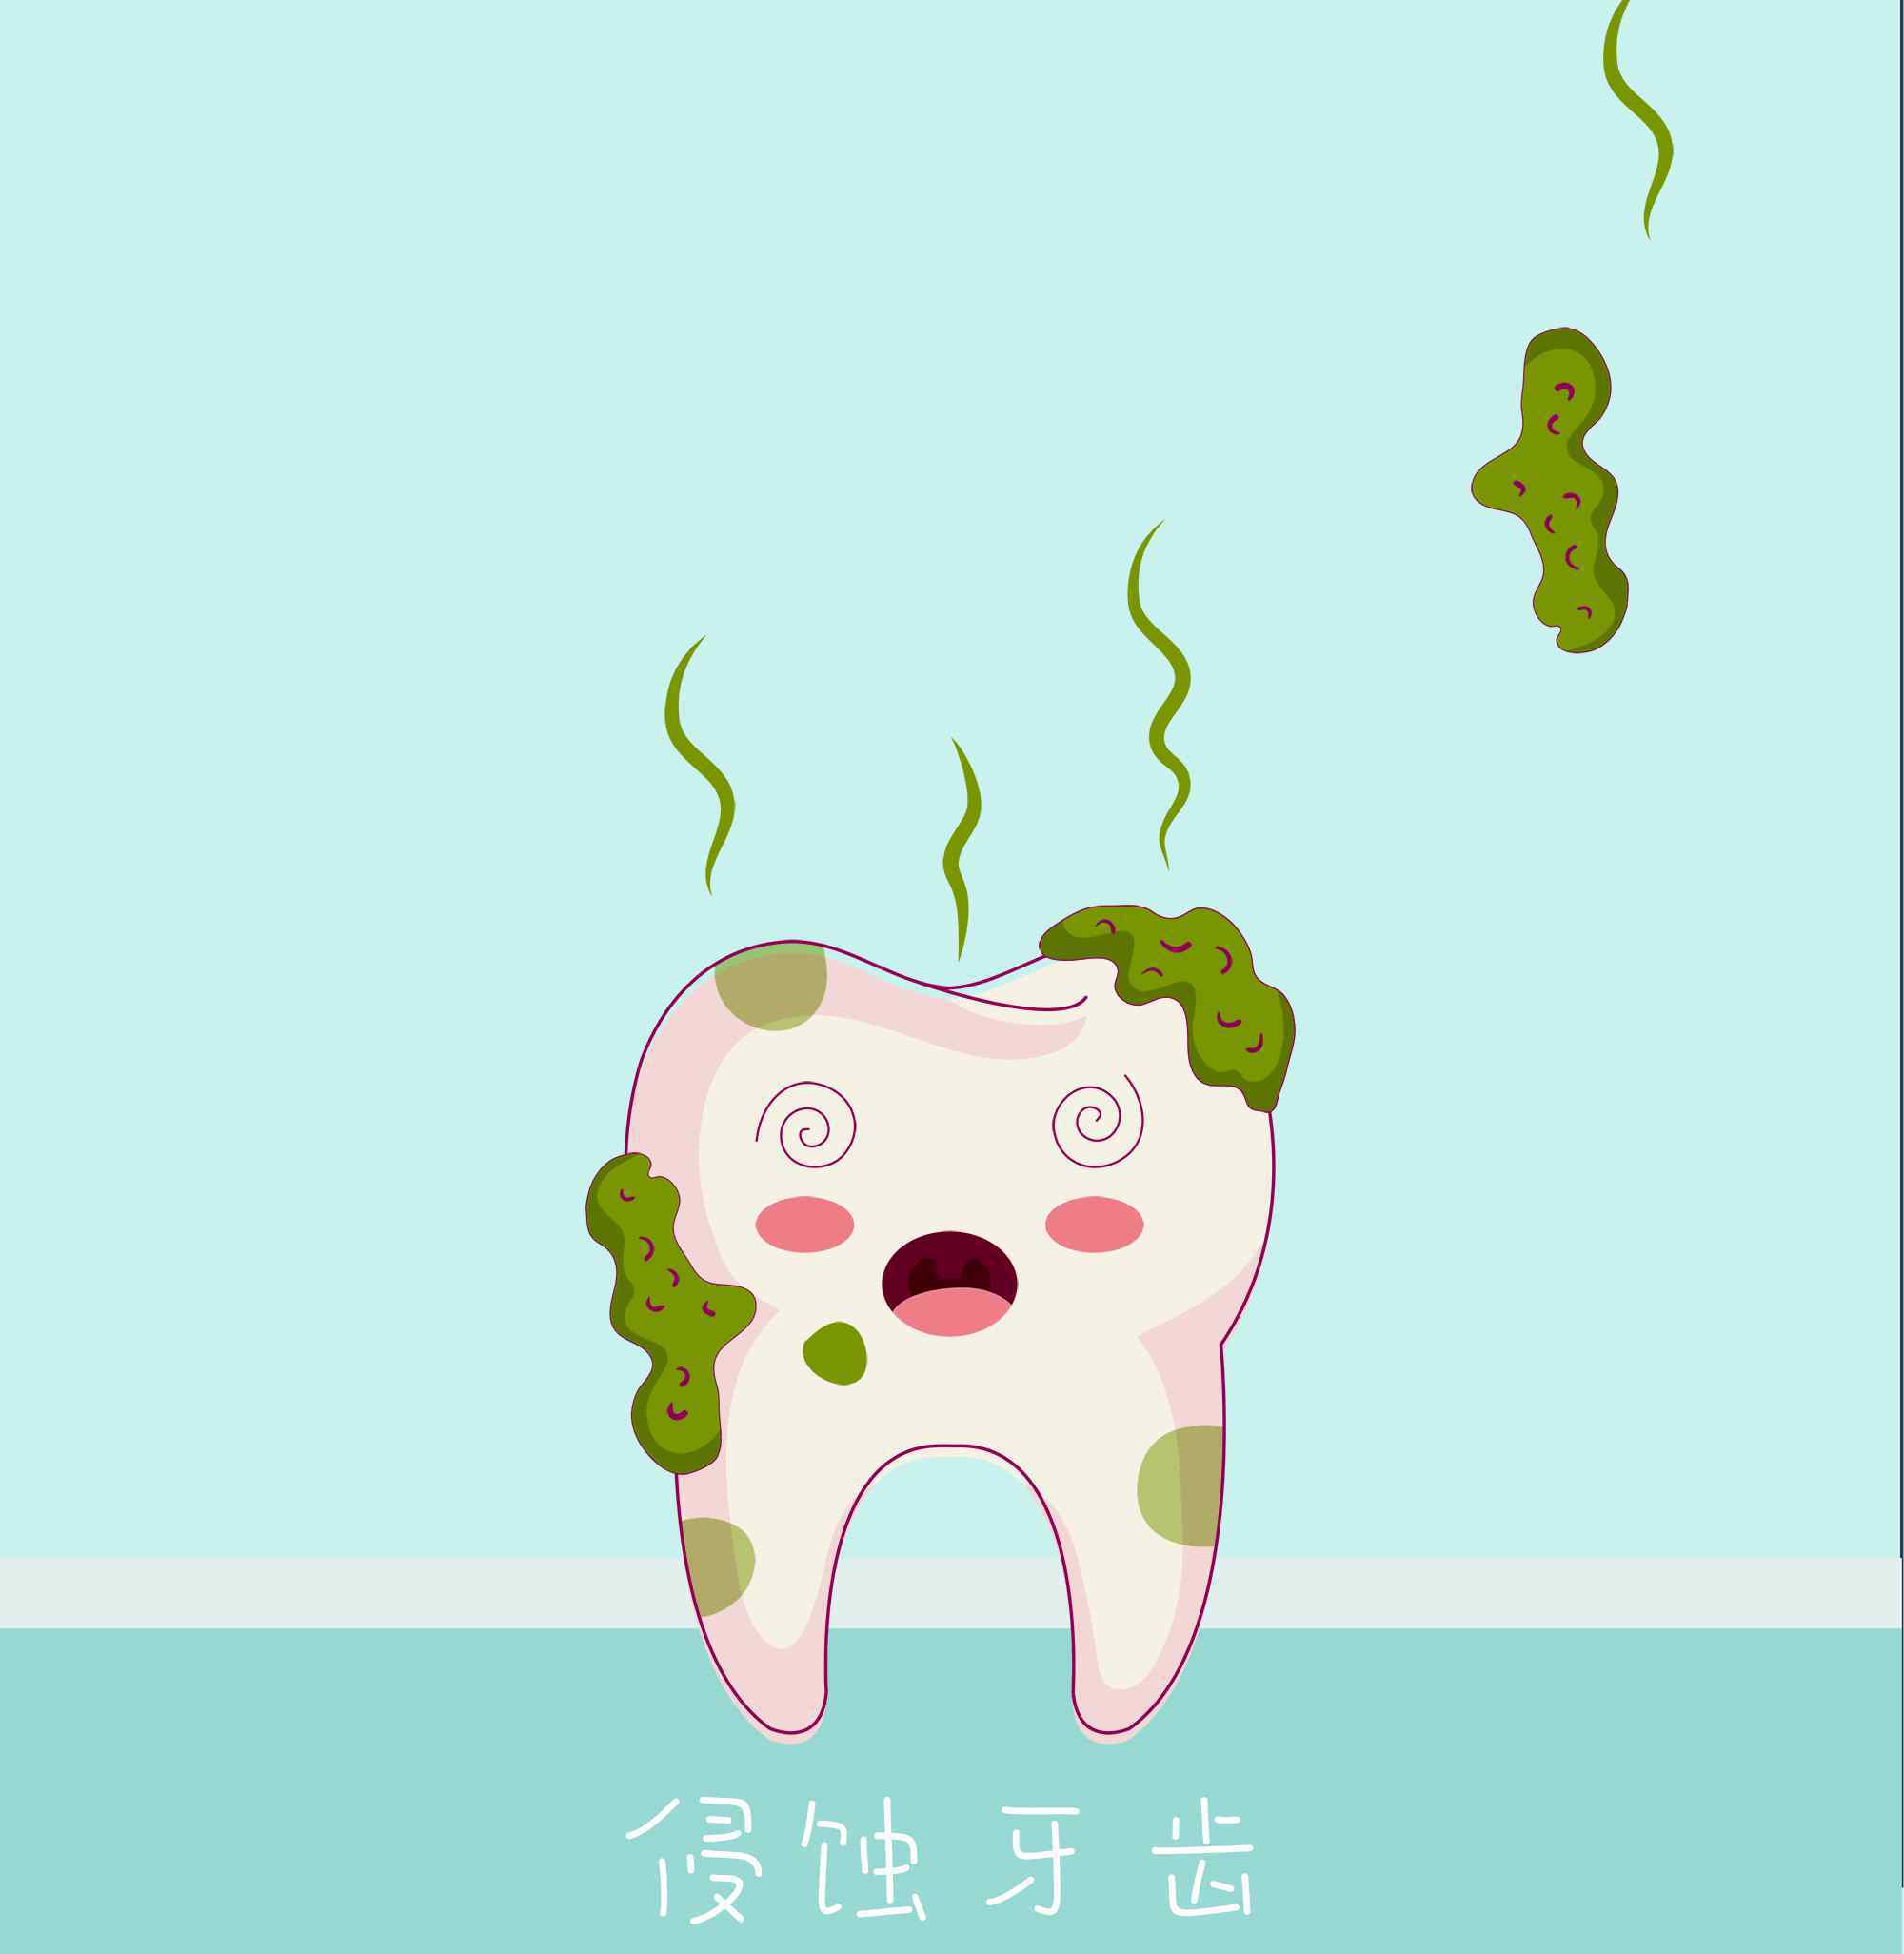 牙垢图片 【腐蚀人类牙齿】有些人生来都没见过的牙菌斑图片